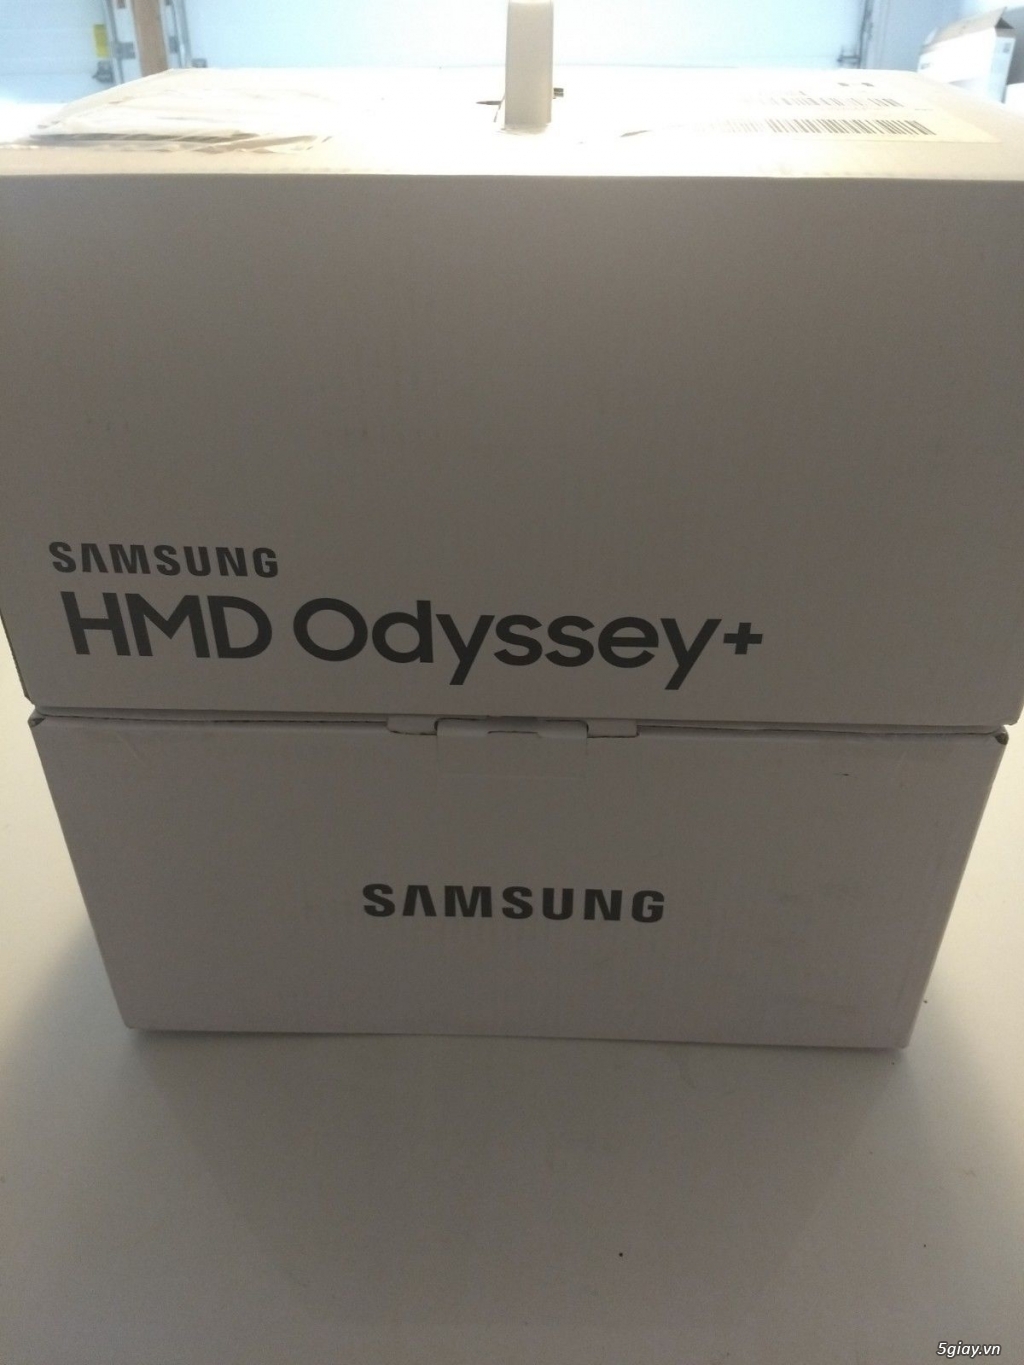 Kính VR Samsung Odyssey Plus New Seal 100% - Hàng ship amazon mới về